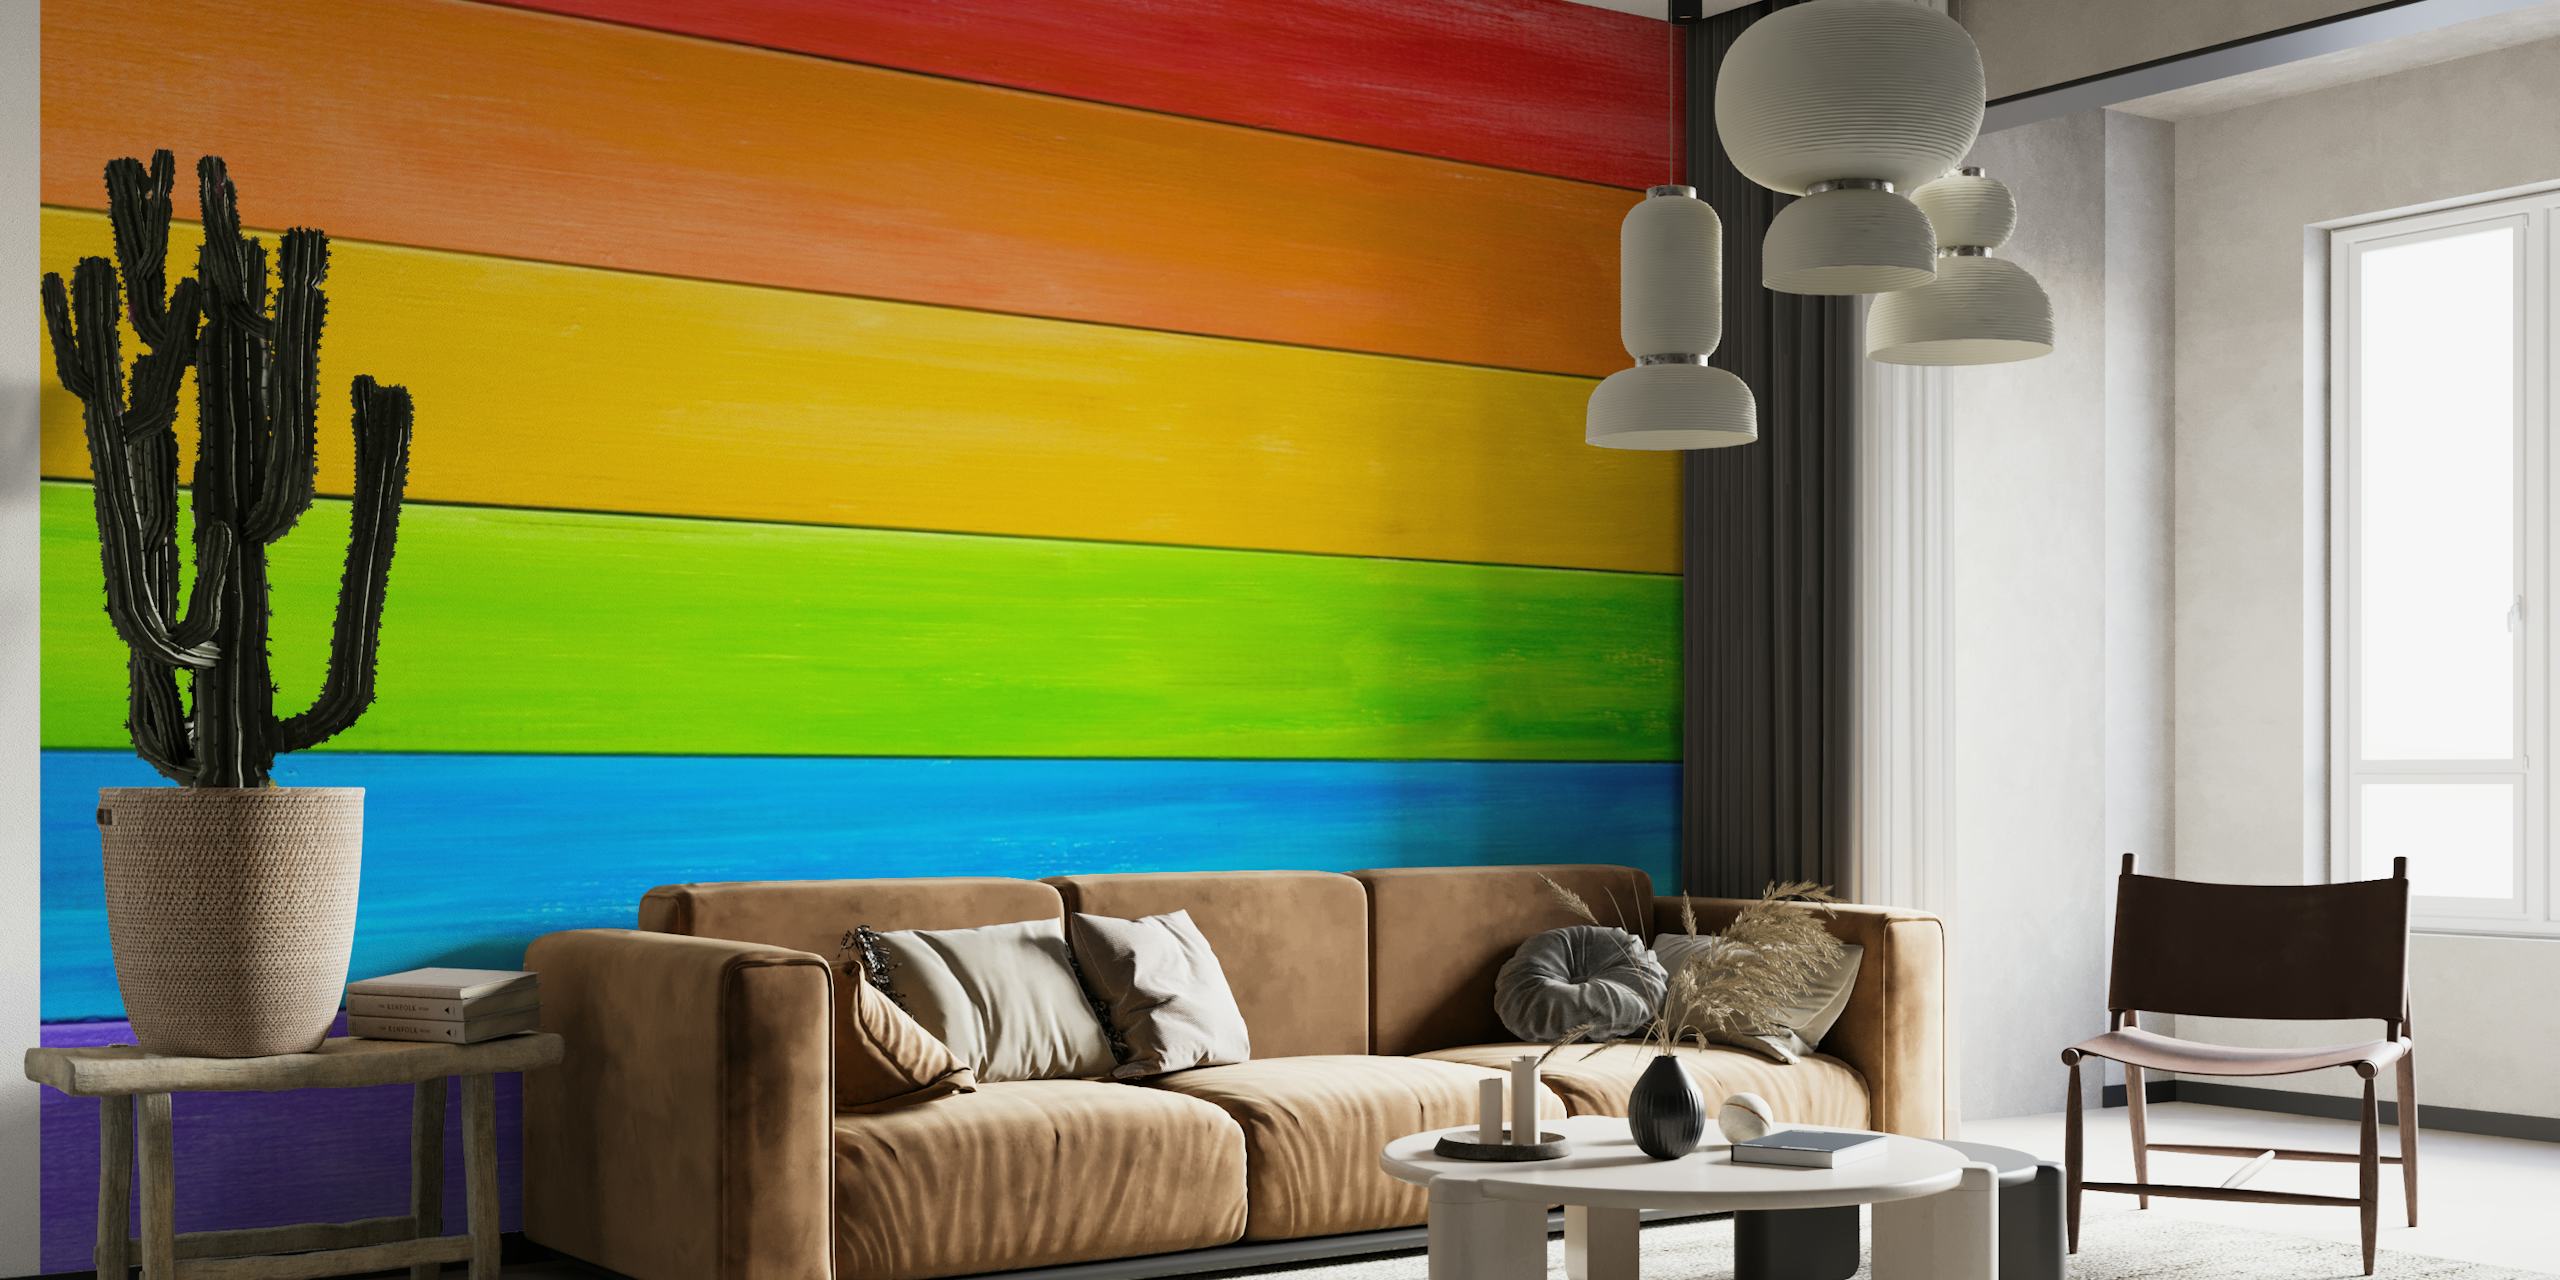 Rainbow planks papel pintado